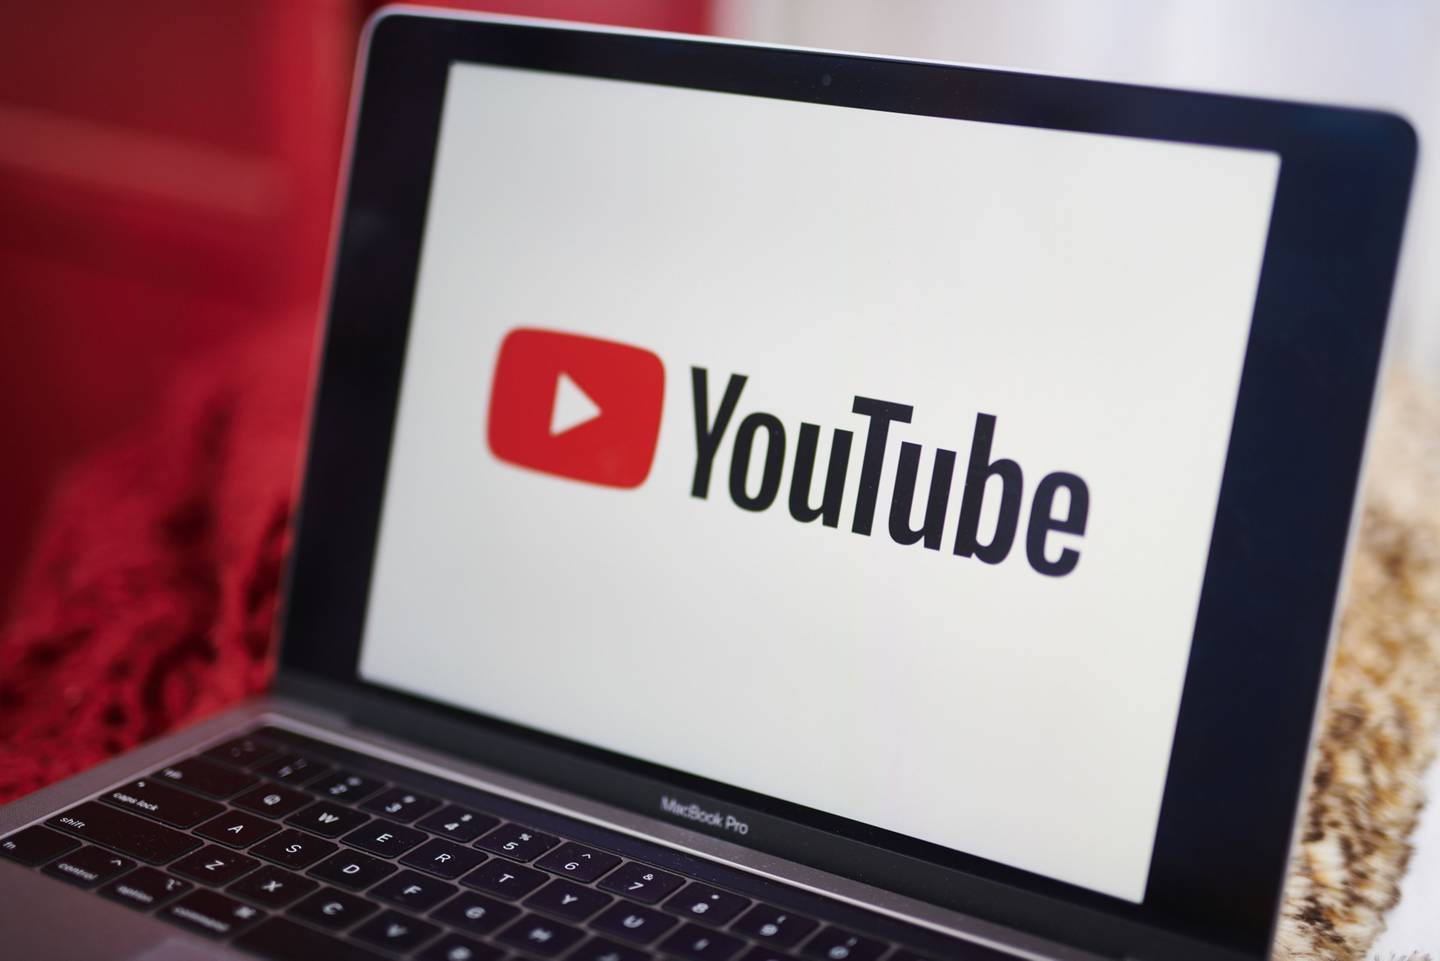 El logotipo de YouTube Inc. aparece en una computadora portátildfd